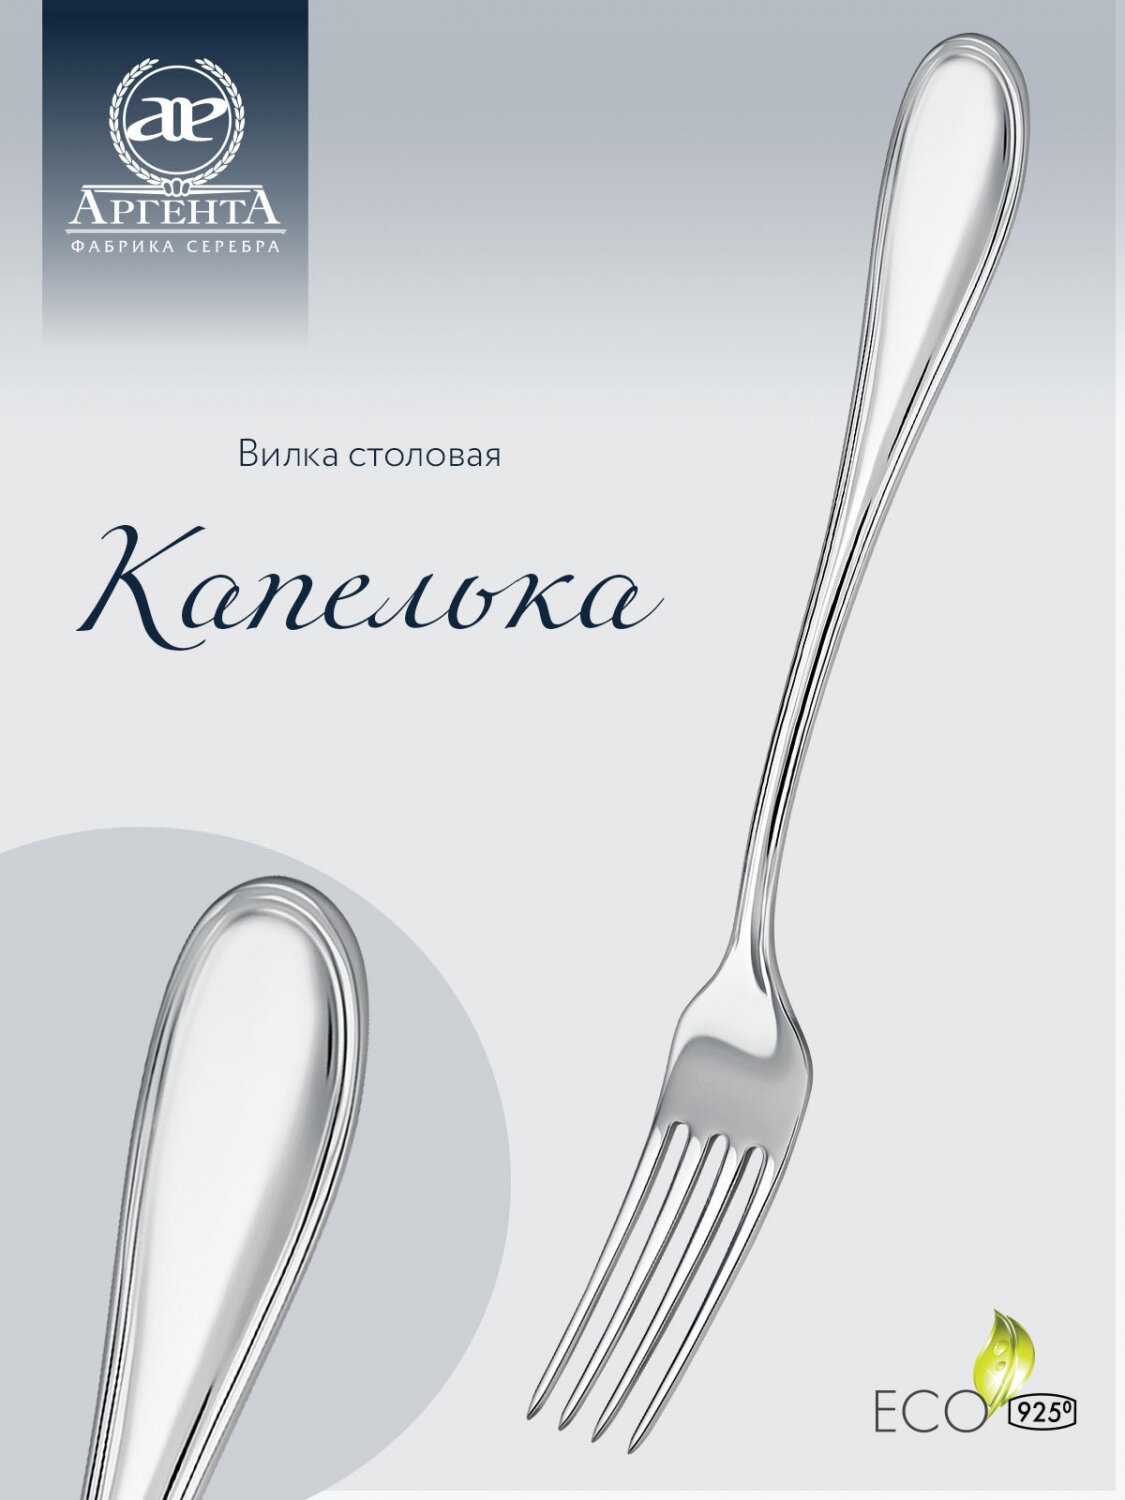 Вилка столовая из серебра 925 пробы "Капелька" от бренда Аргента